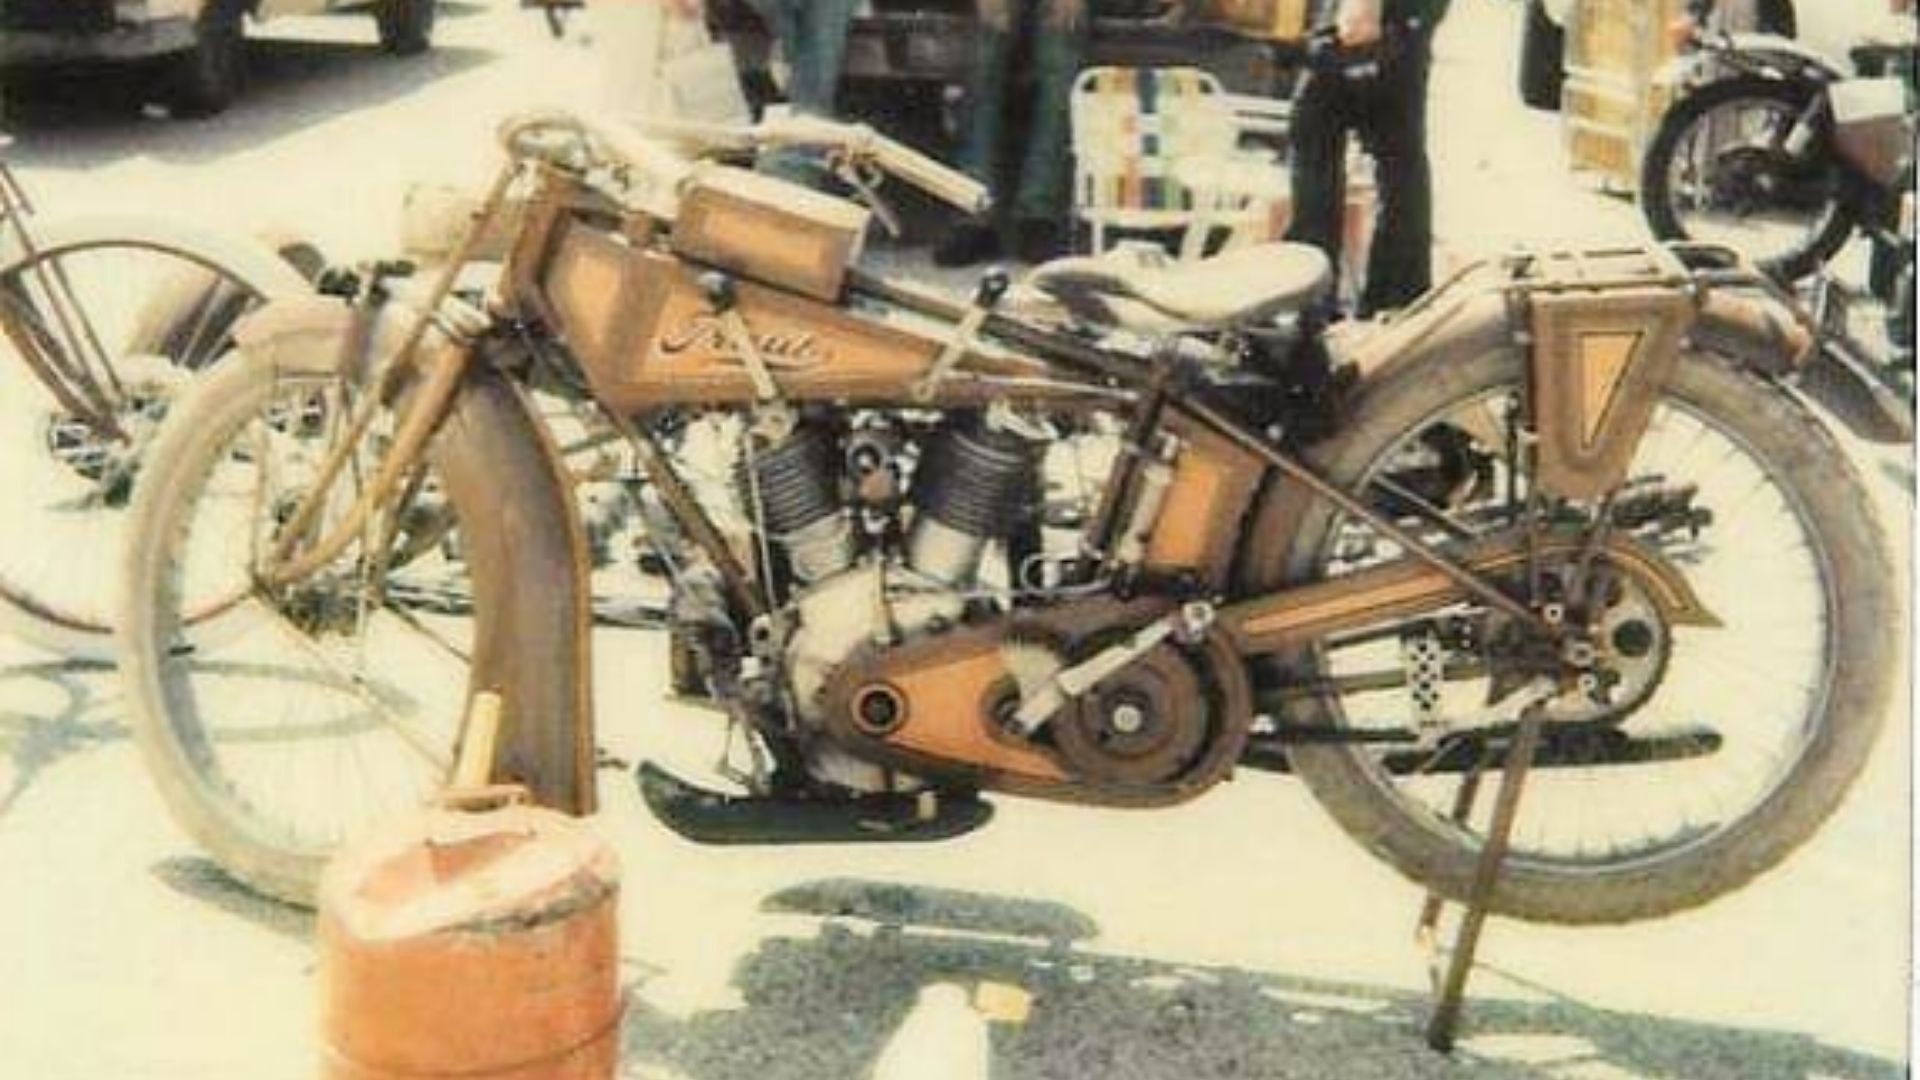 Traub摩托车的视图，这台机器估计是1916年制造的，是至今仍未解开的独一无二的谜团